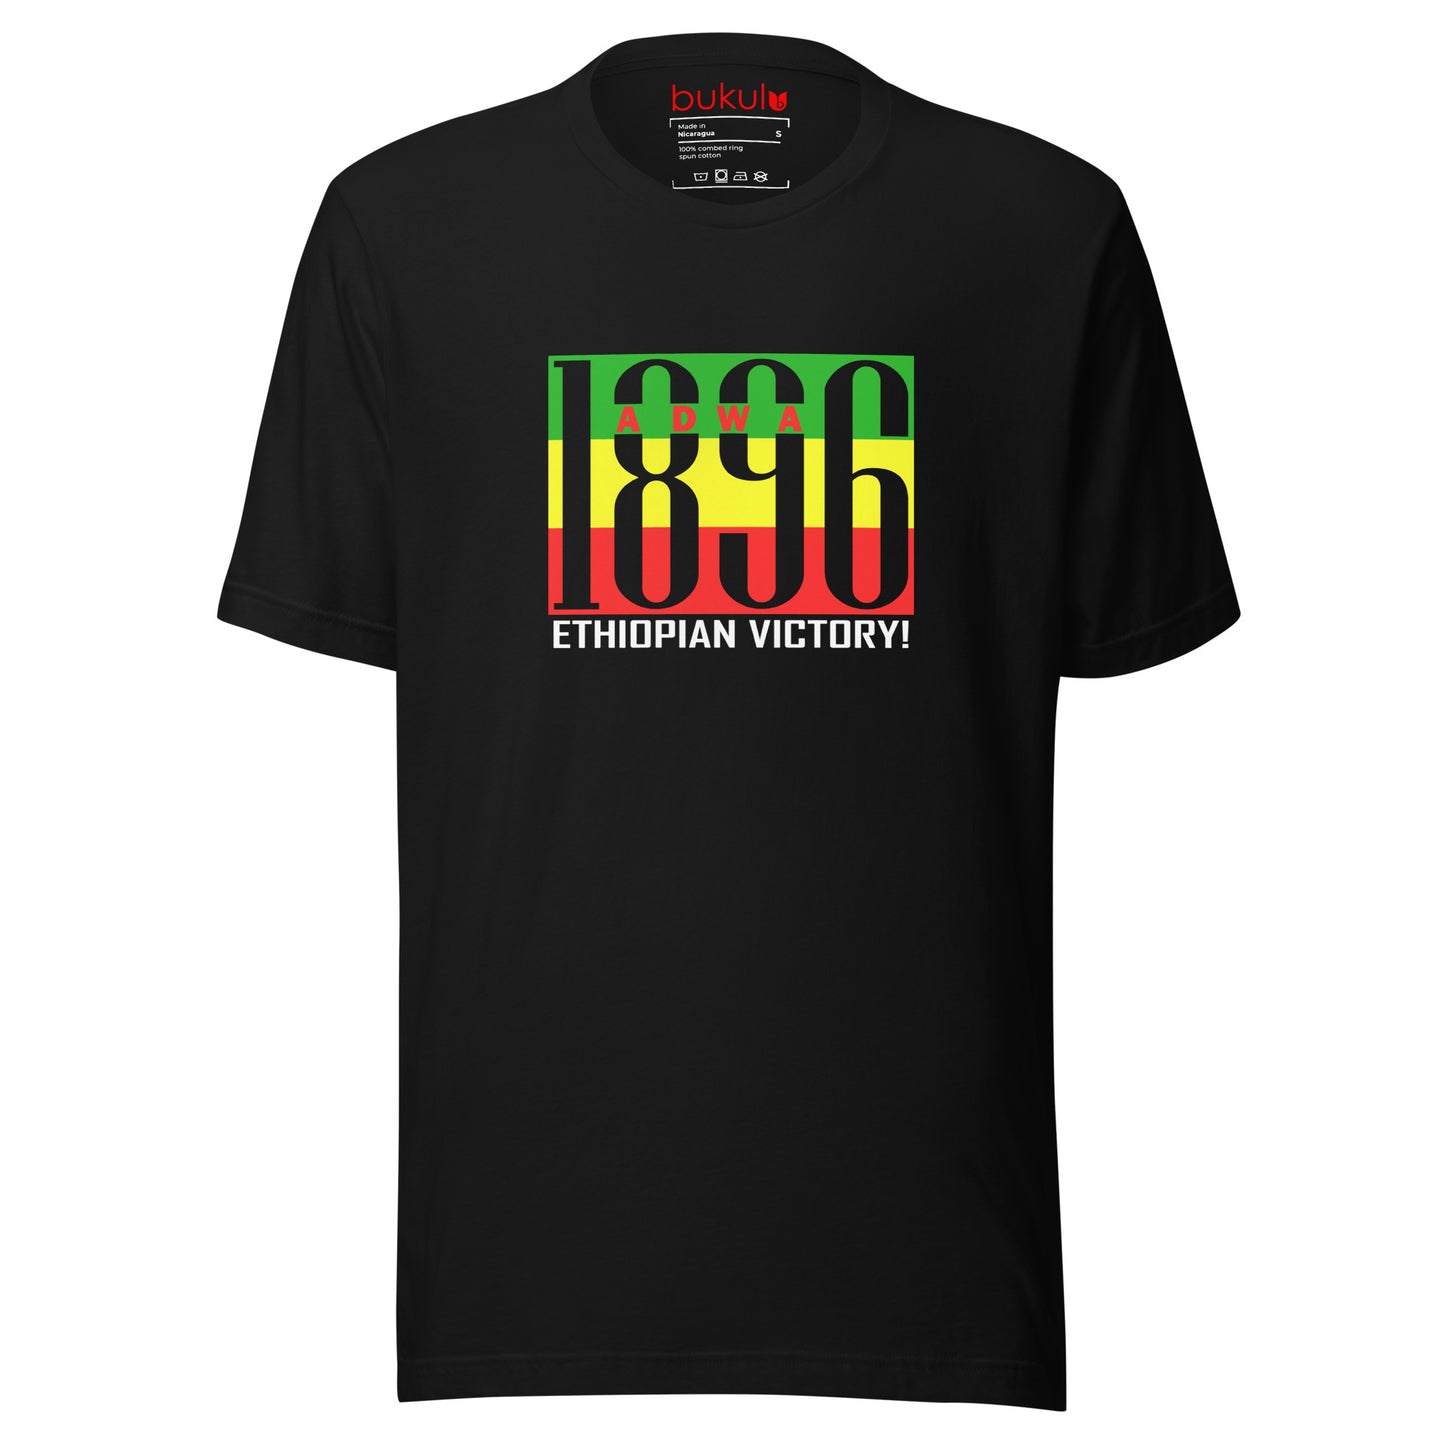 Adwa 1896 Ethiopian Victory Unisex T-Shirt - Celebrate History & Heritage